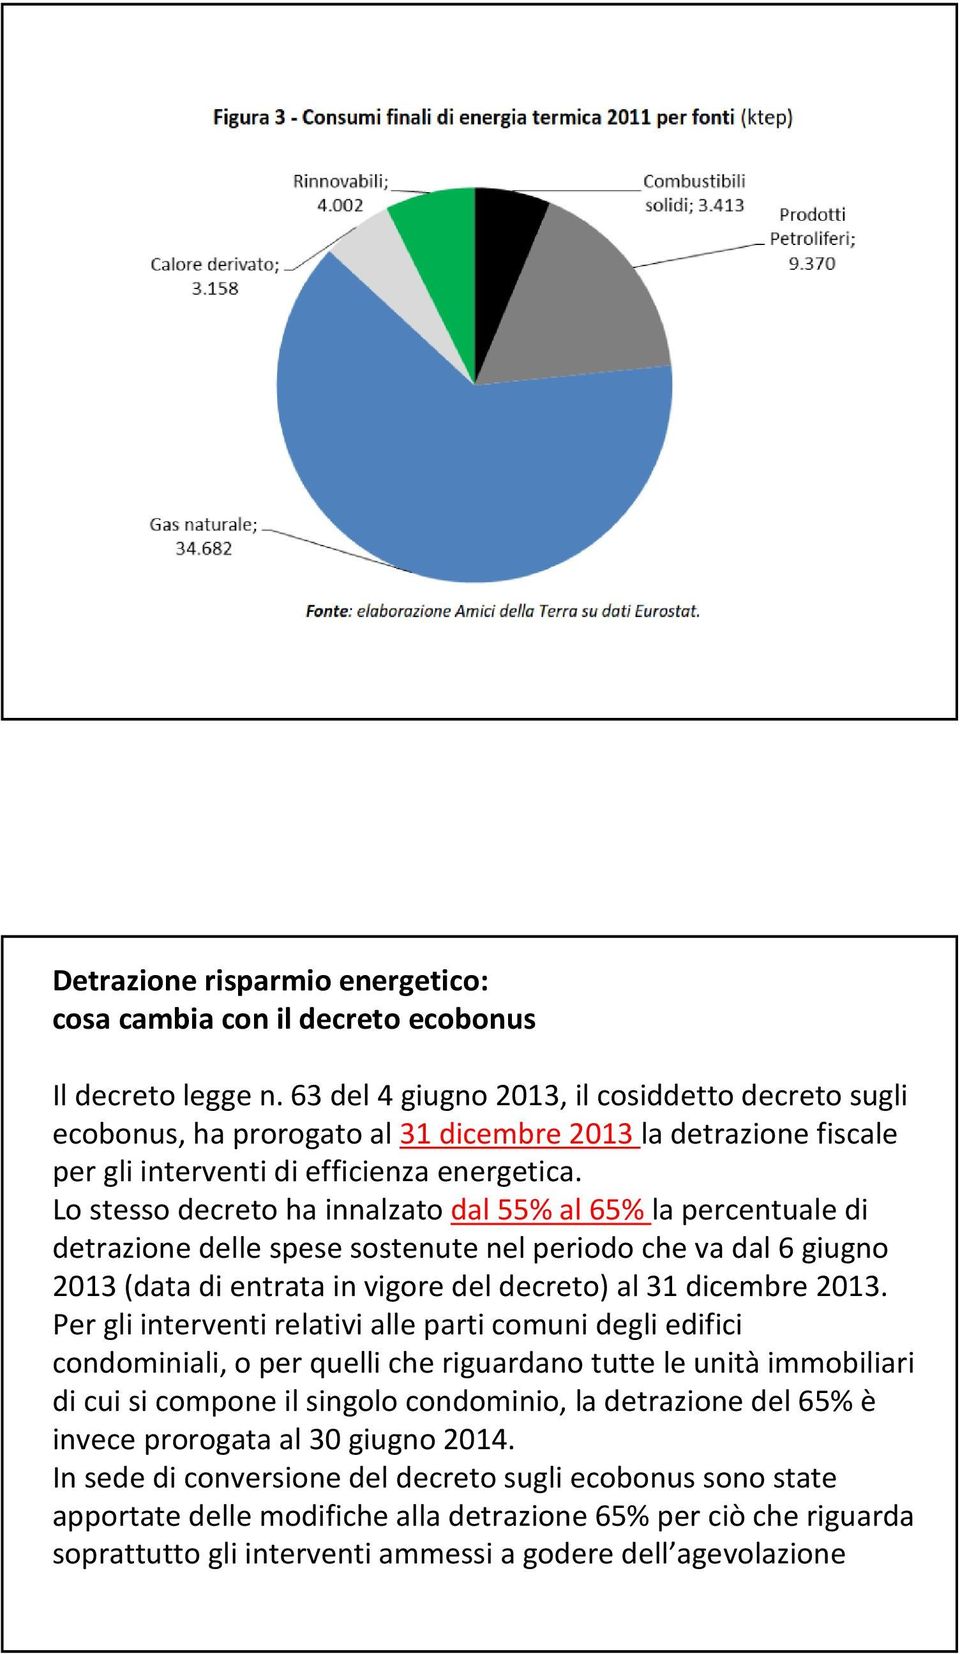 Lo stesso decreto ha innalzato dal 55% al 65% la percentuale di detrazione delle spese sostenute nel periodo che va dal 6 giugno 2013 (data di entrata in vigore del decreto) al 31 dicembre 2013.